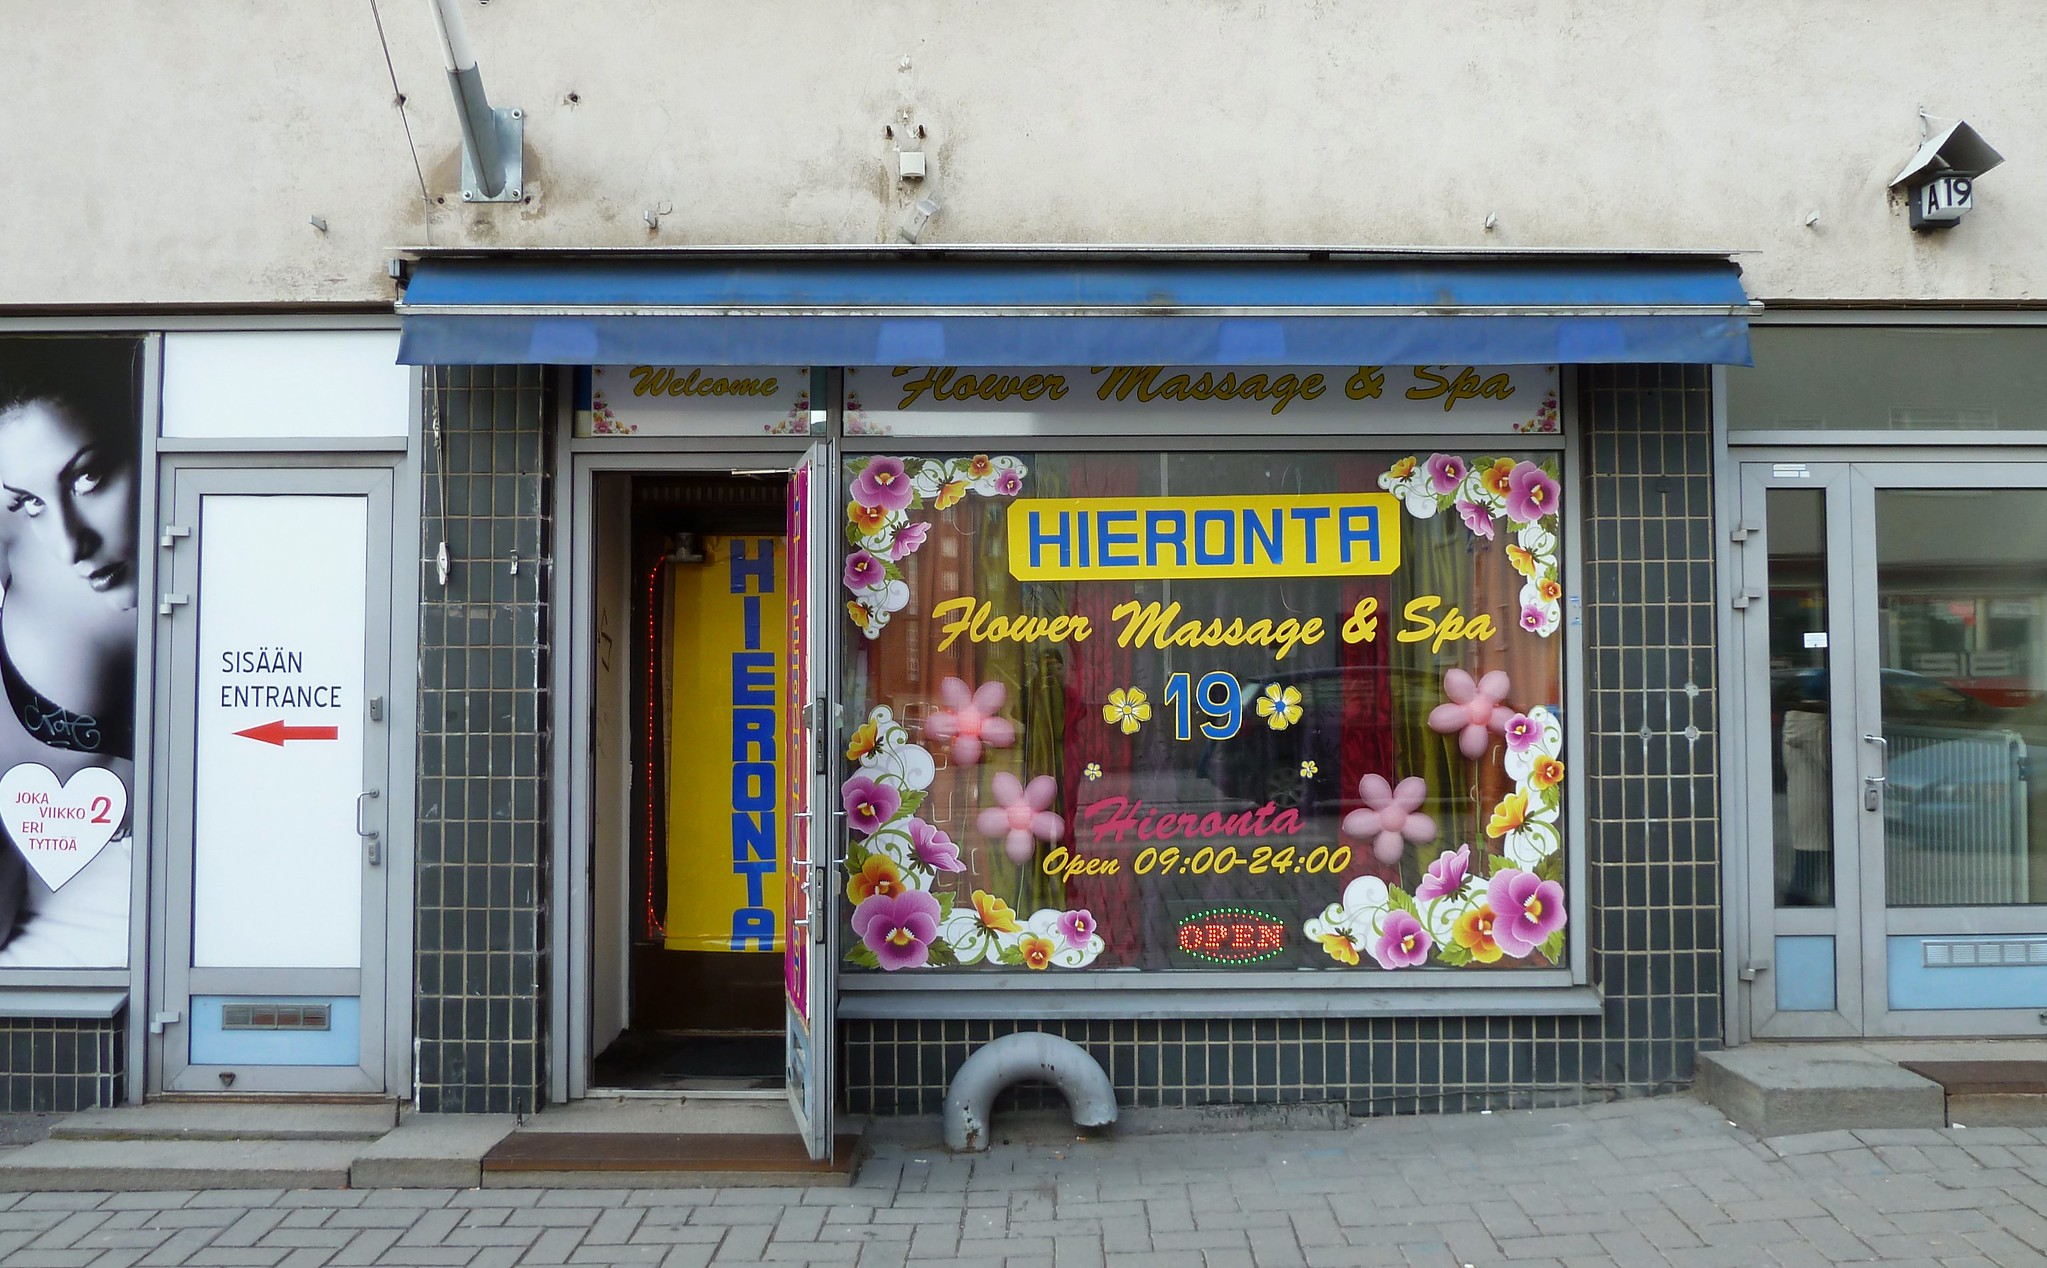 Sex Hieronta Shop